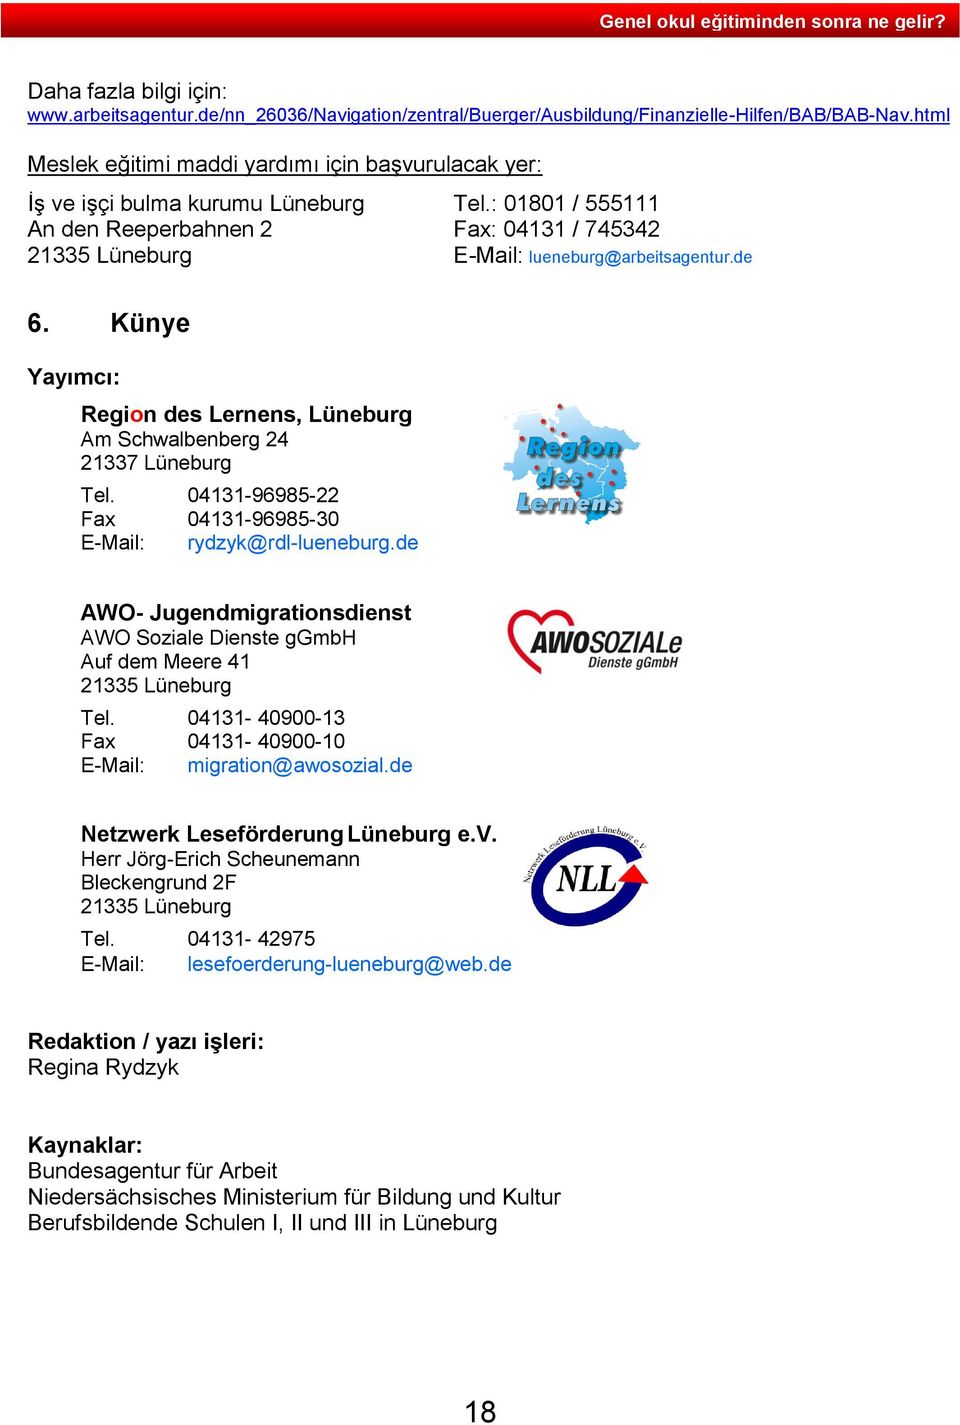 : 01801 / 555111 An den Reeperbahnen 2 Fax: 04131 / 745342 21335 Lüneburg E-Mail: lueneburg@arbeitsagentur.de 6. Künye Yayımcı: Region des Lernens, Lüneburg Am Schwalbenberg 24 21337 Lüneburg Tel.